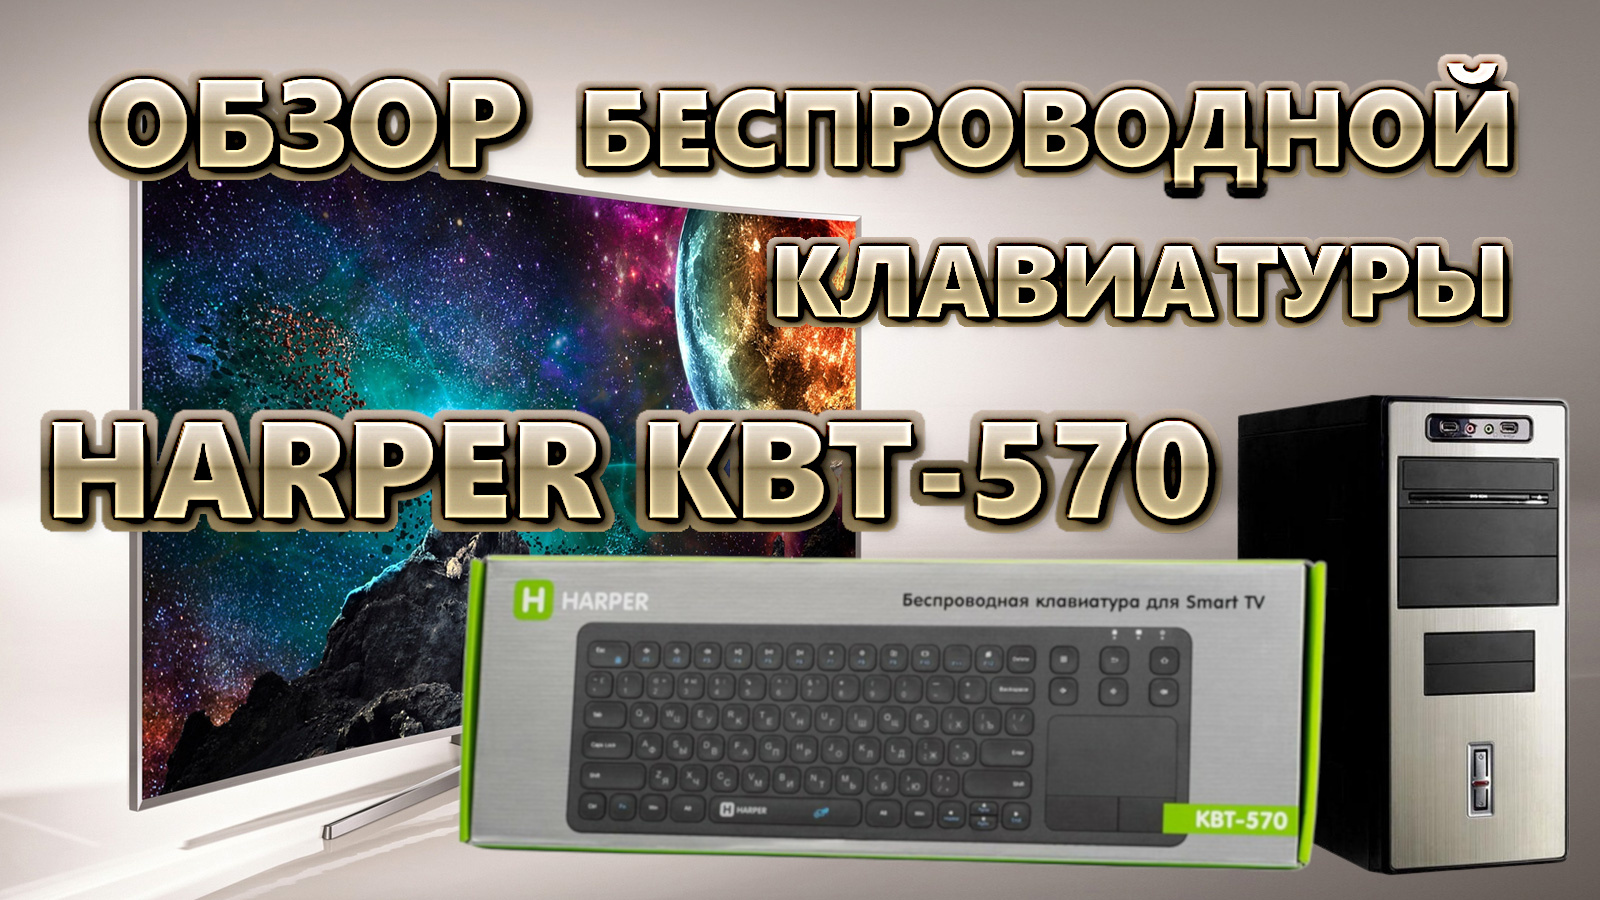 Обзор беспроводной клавиатуры Harper KBT-570 с тачпадом